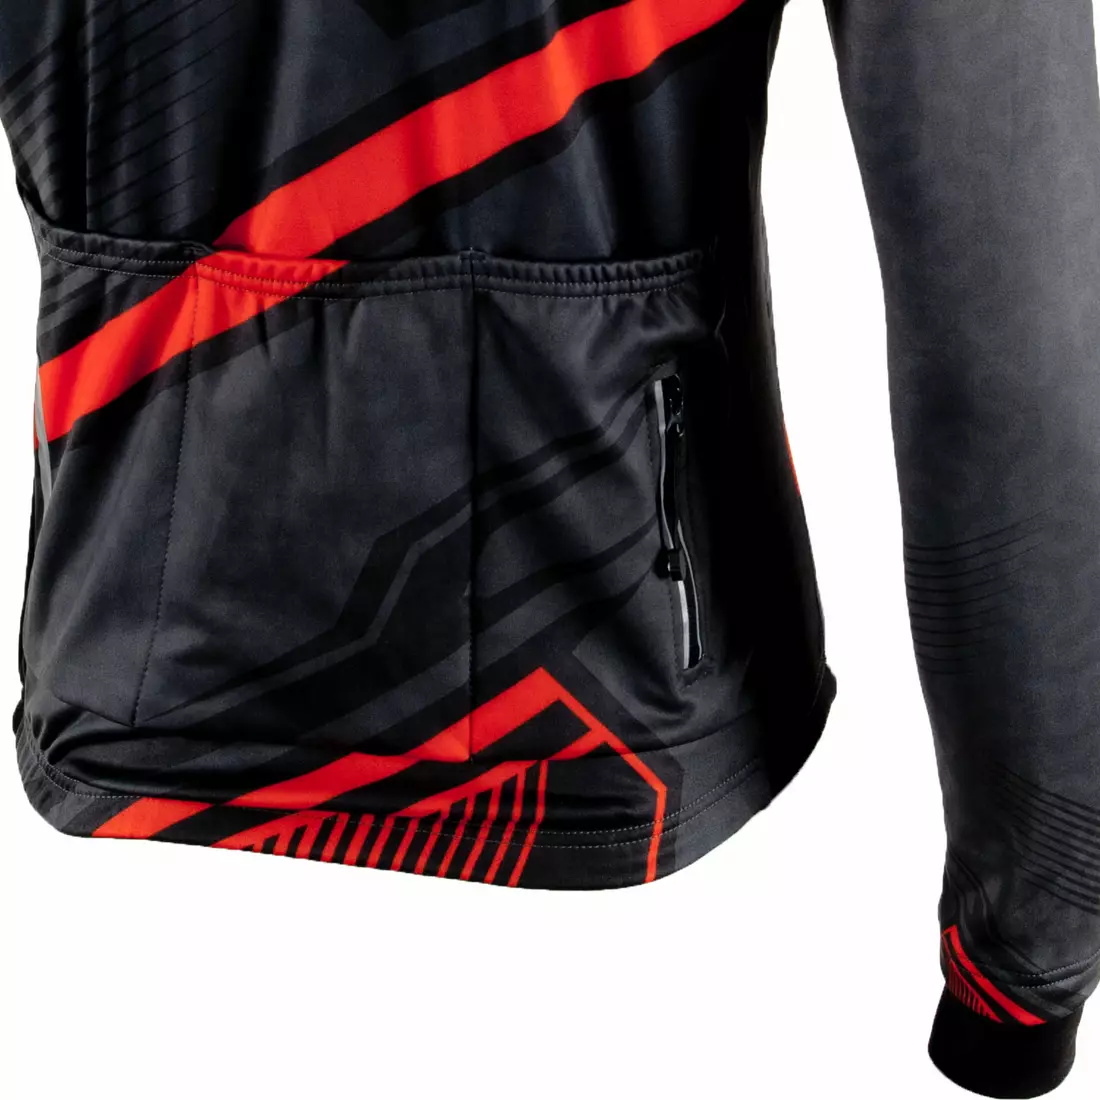 DEKO MNK-001-09 pánsky cyklistický dres s dlhým rukávom, červený